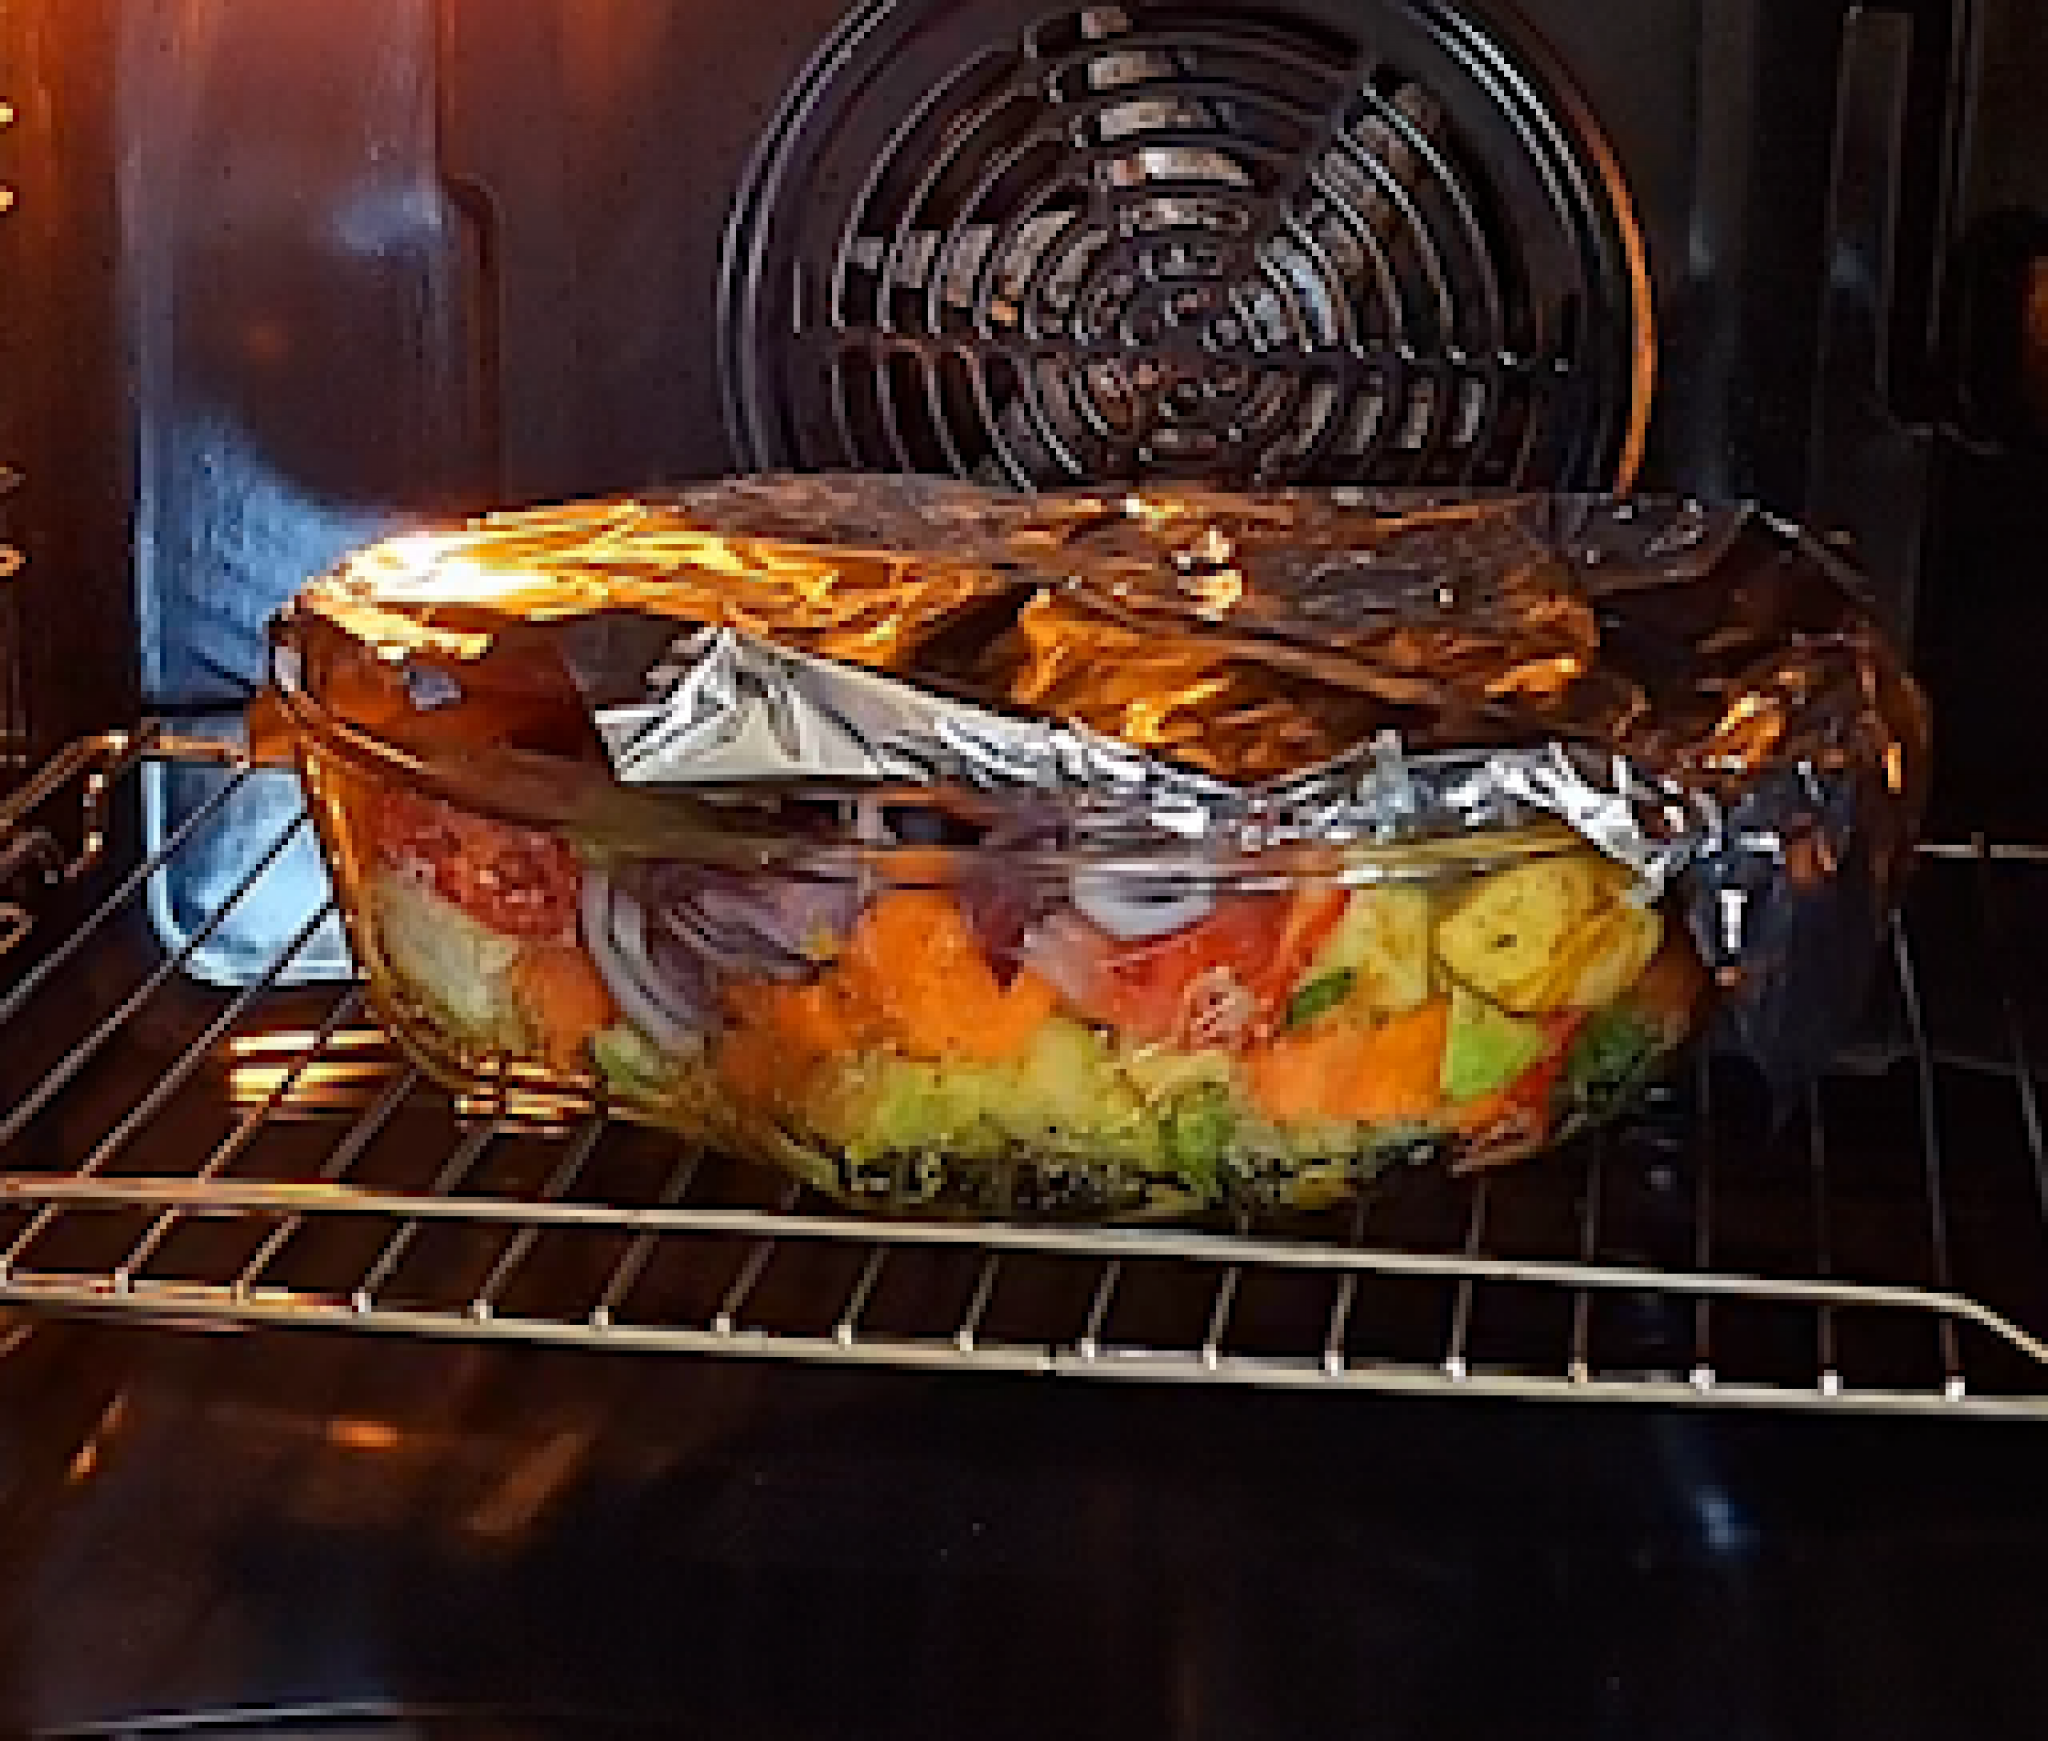 VRHUNSKI RECEPT ZA ZDRAV RUČAK Krompir sa povrćem, obrok  pun vitamina i minerala (VIDEO)